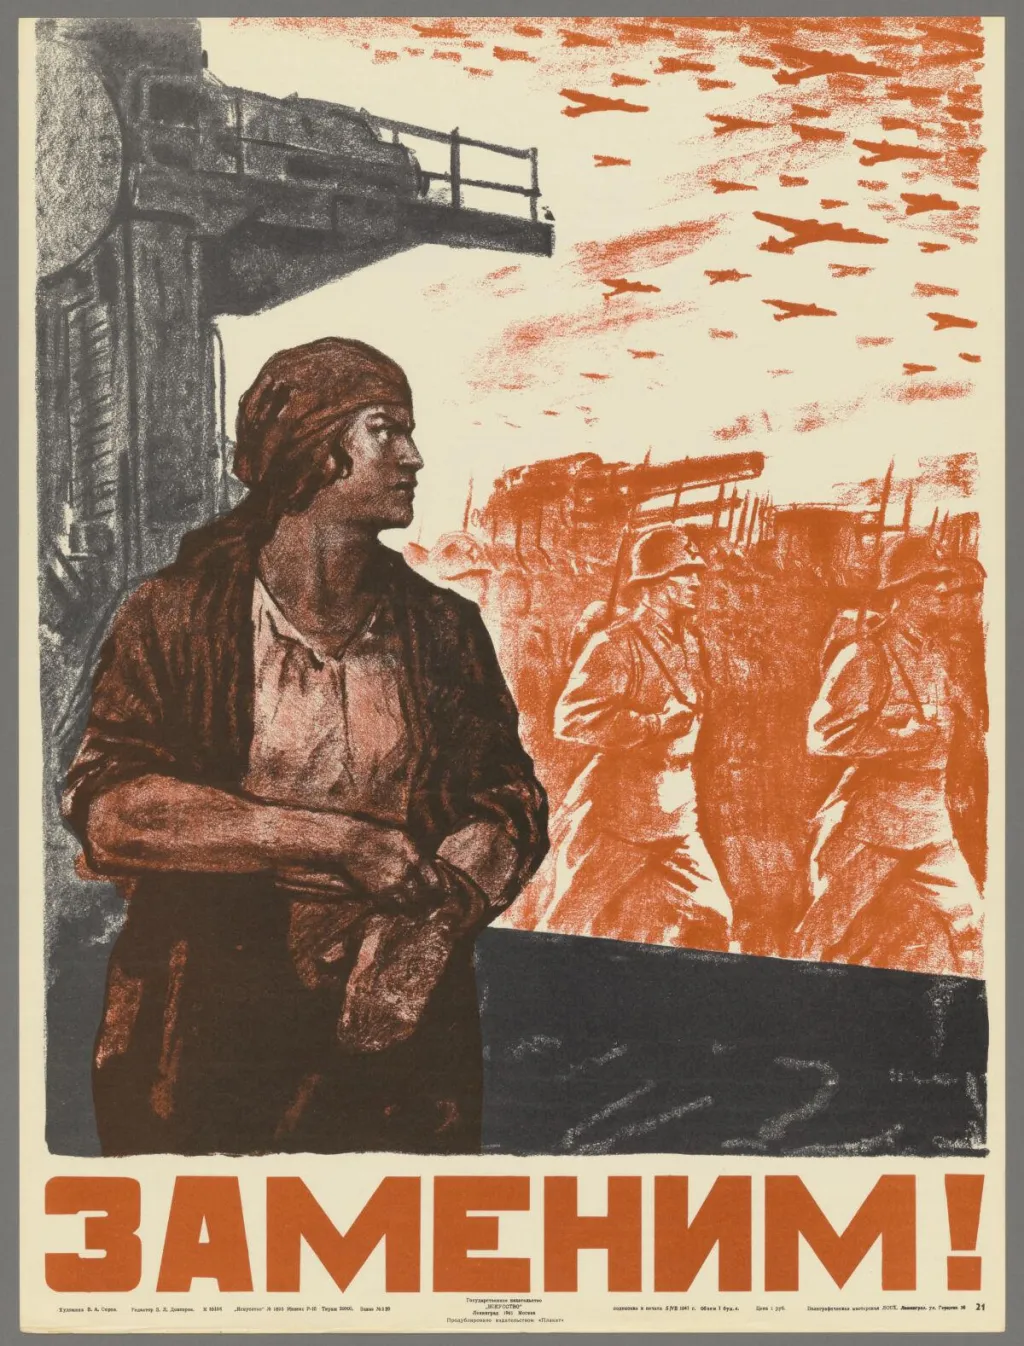 "Nastoupíme na jejich místo!" je plakát, který ukazuje, jak sovětské ženy nahradily za II. světové války muže, kteří museli narukovat